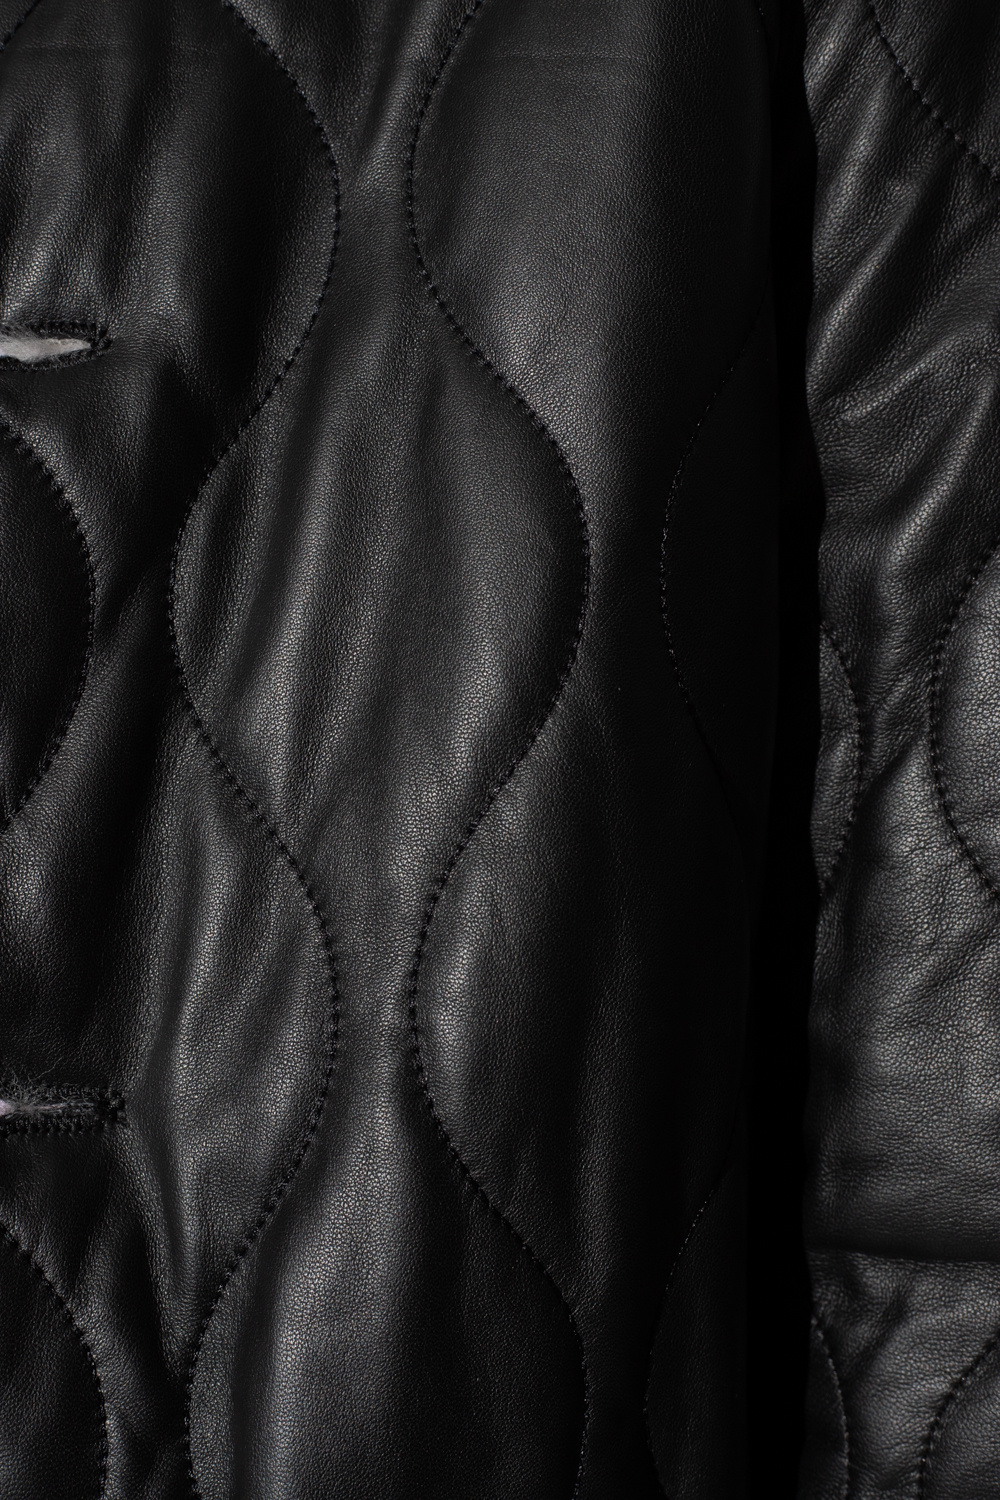 AllSaints ‘Duthie’ reversible jacket